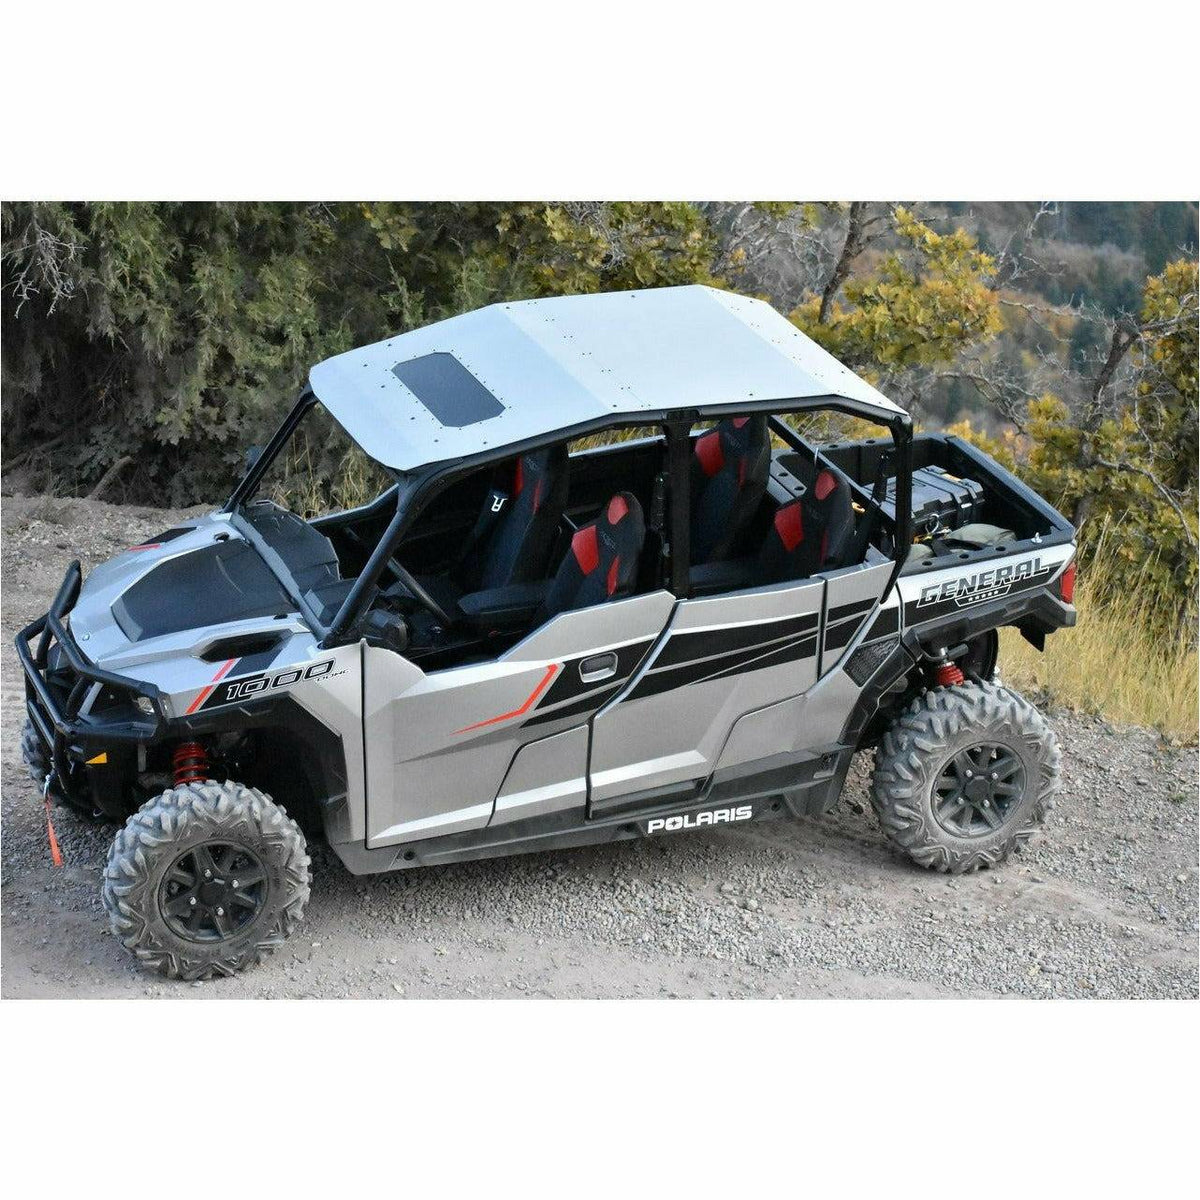 Moto Armor Polaris General 4-Seater Aluminum Roof with Sunroof